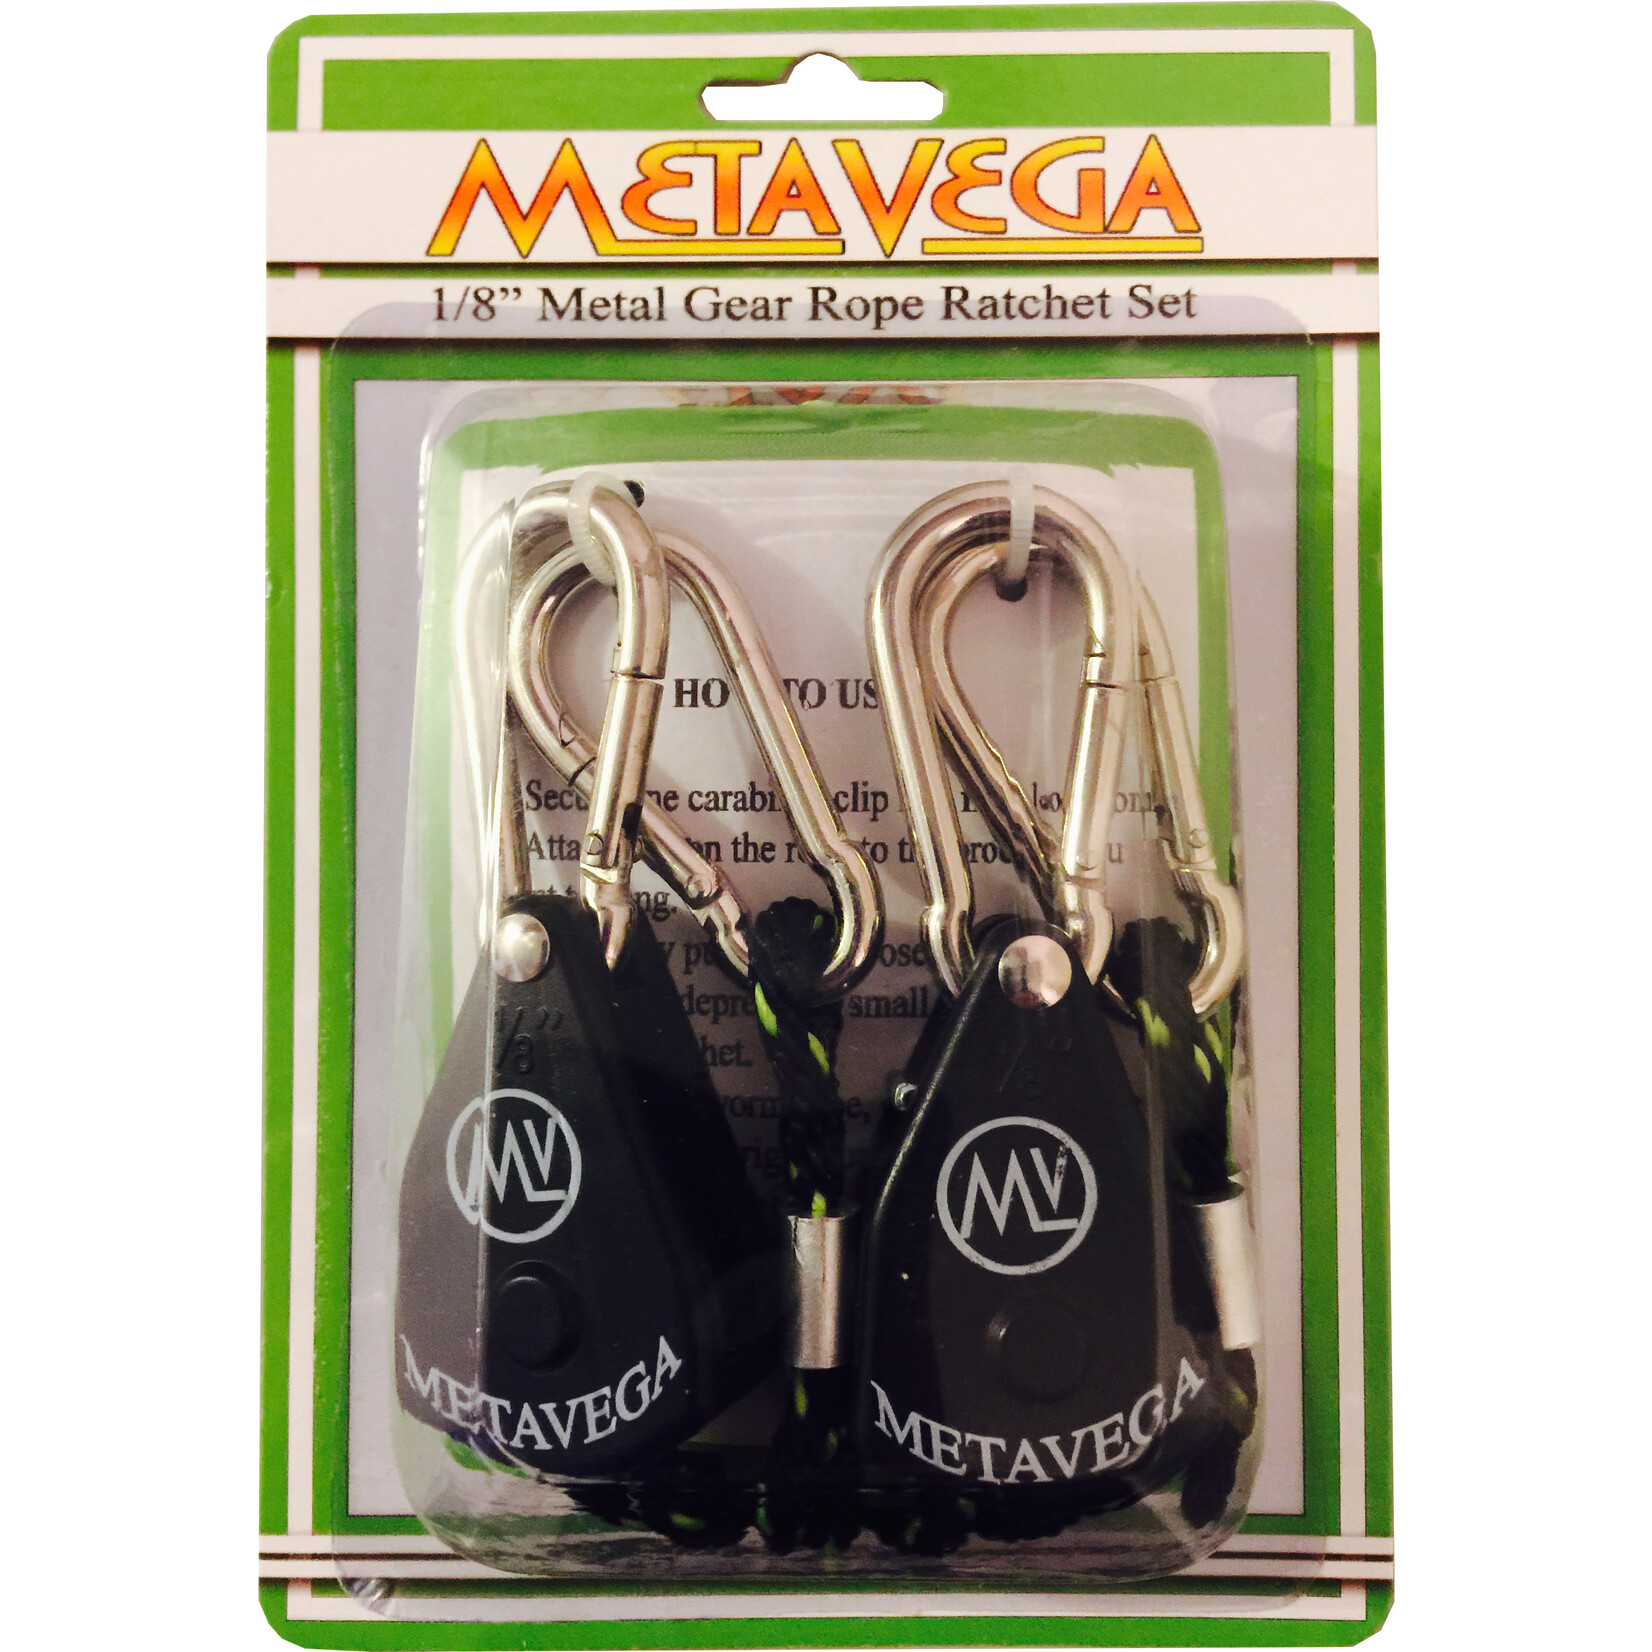 MetaVega MetaVega Rope Ratchet 1/8th